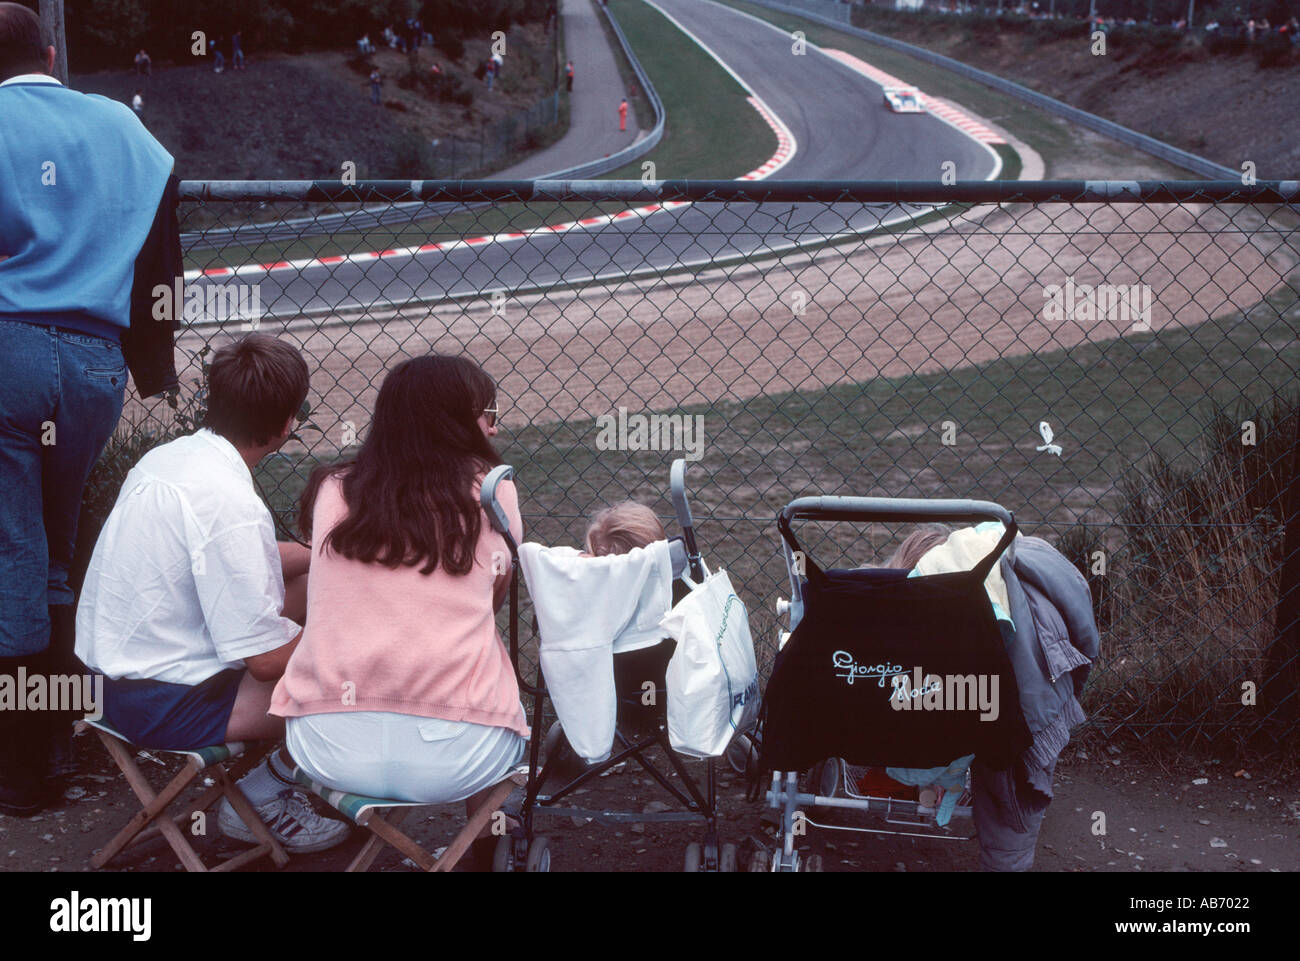 Familia Joven viendo motor de 1000km de carrera en el circuito de Spa Francorchamps en Bélgica Foto de stock